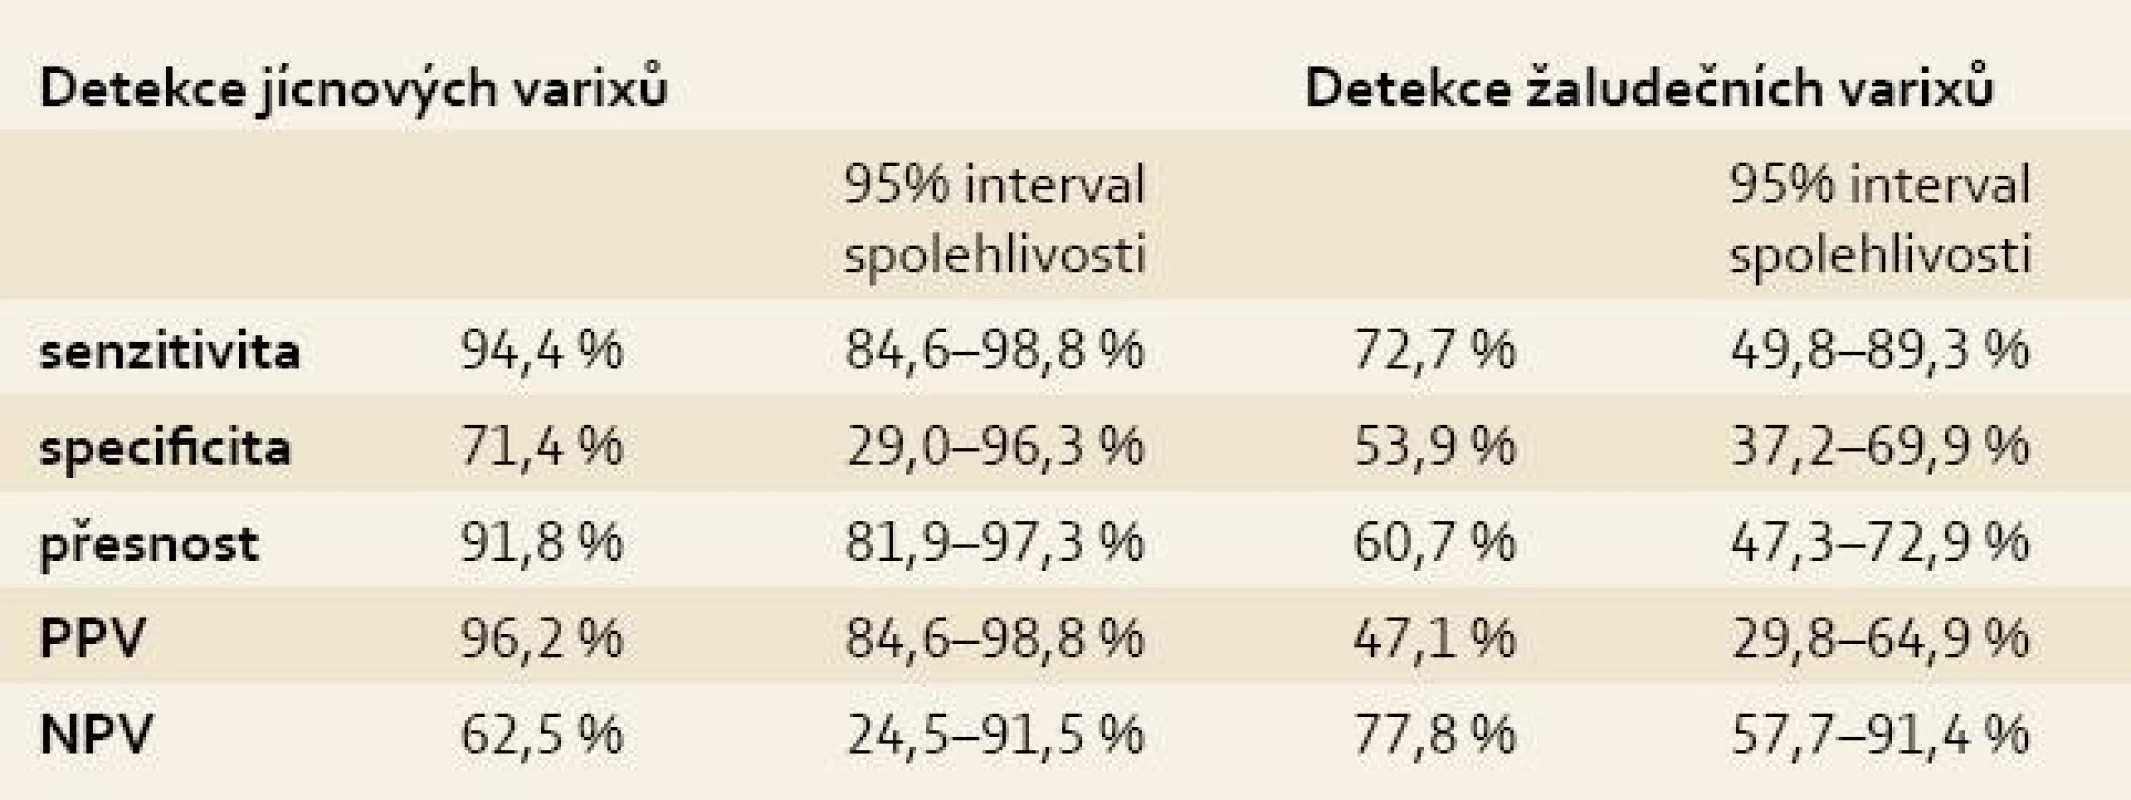 Senzitivita a specificita EUS v detekci jícnových a žaludečních varixů.&lt;br&gt;
Tab. 5. EUS sensitivity and specificity in the detection of oesophageal and gastric varices.